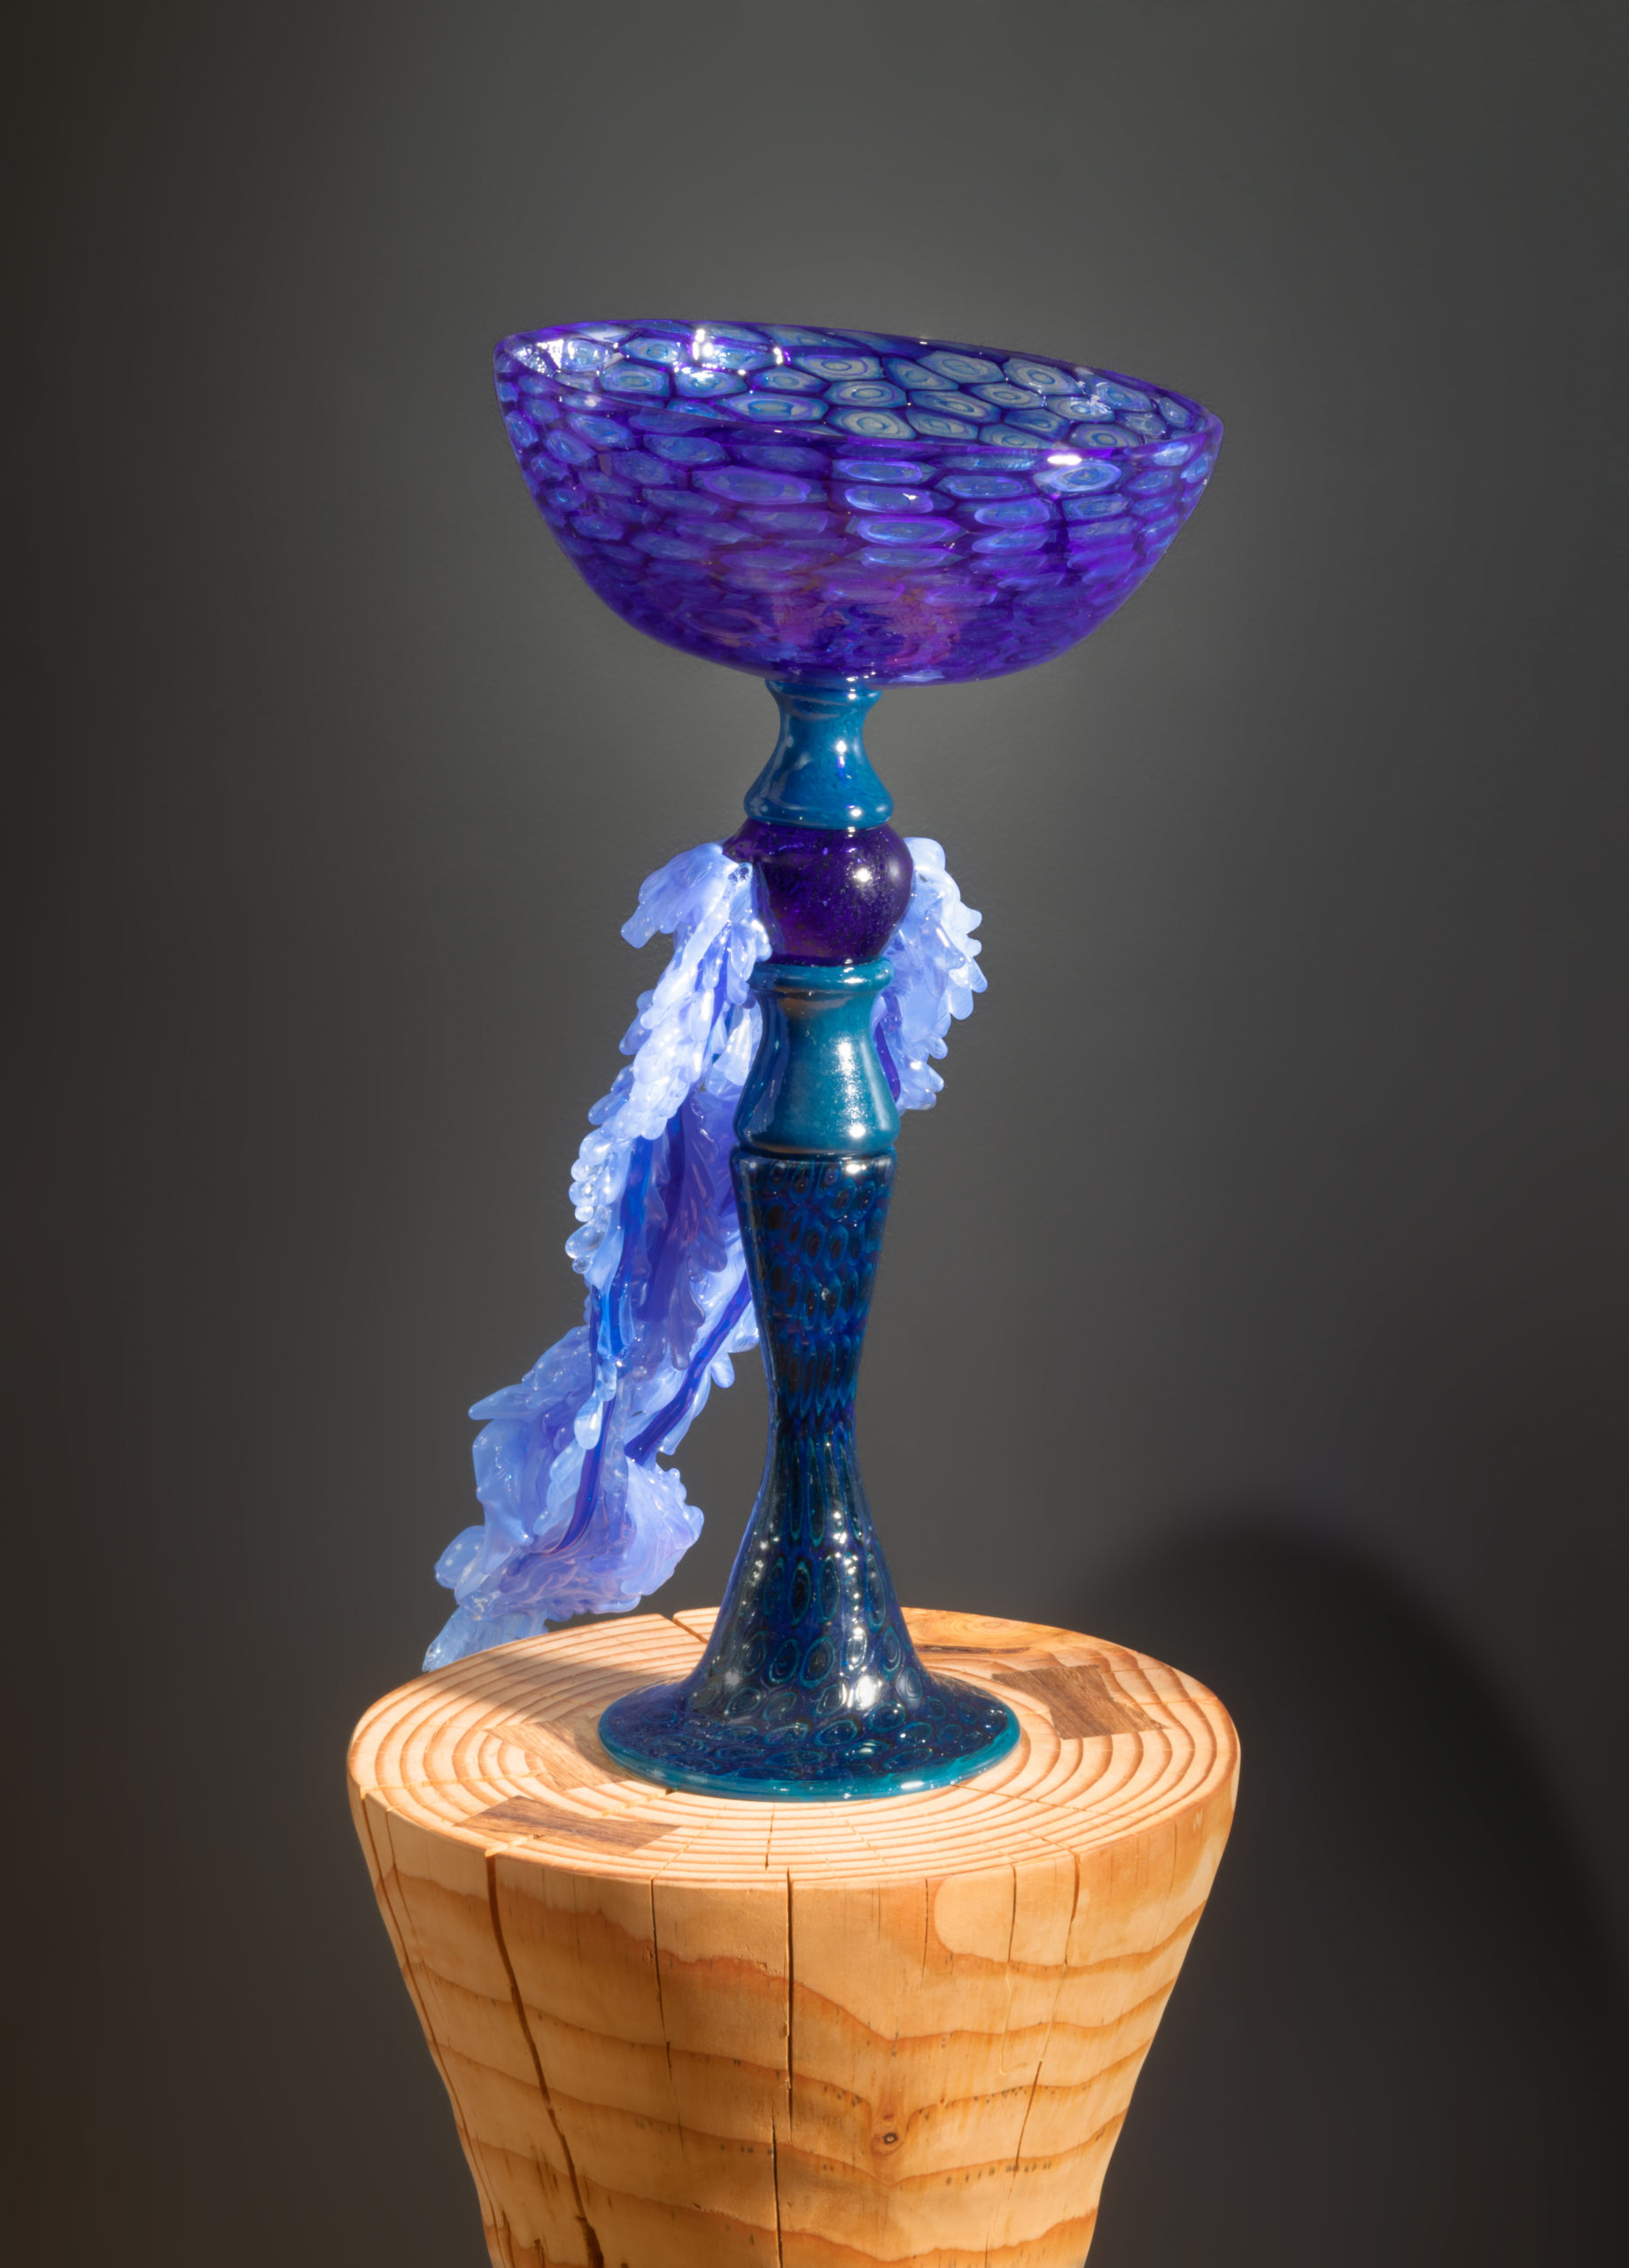 Kazuki Takizawa, Blue Bird, 2020. Glass, wood. 50"x16"x16". Courtesy of the artist.